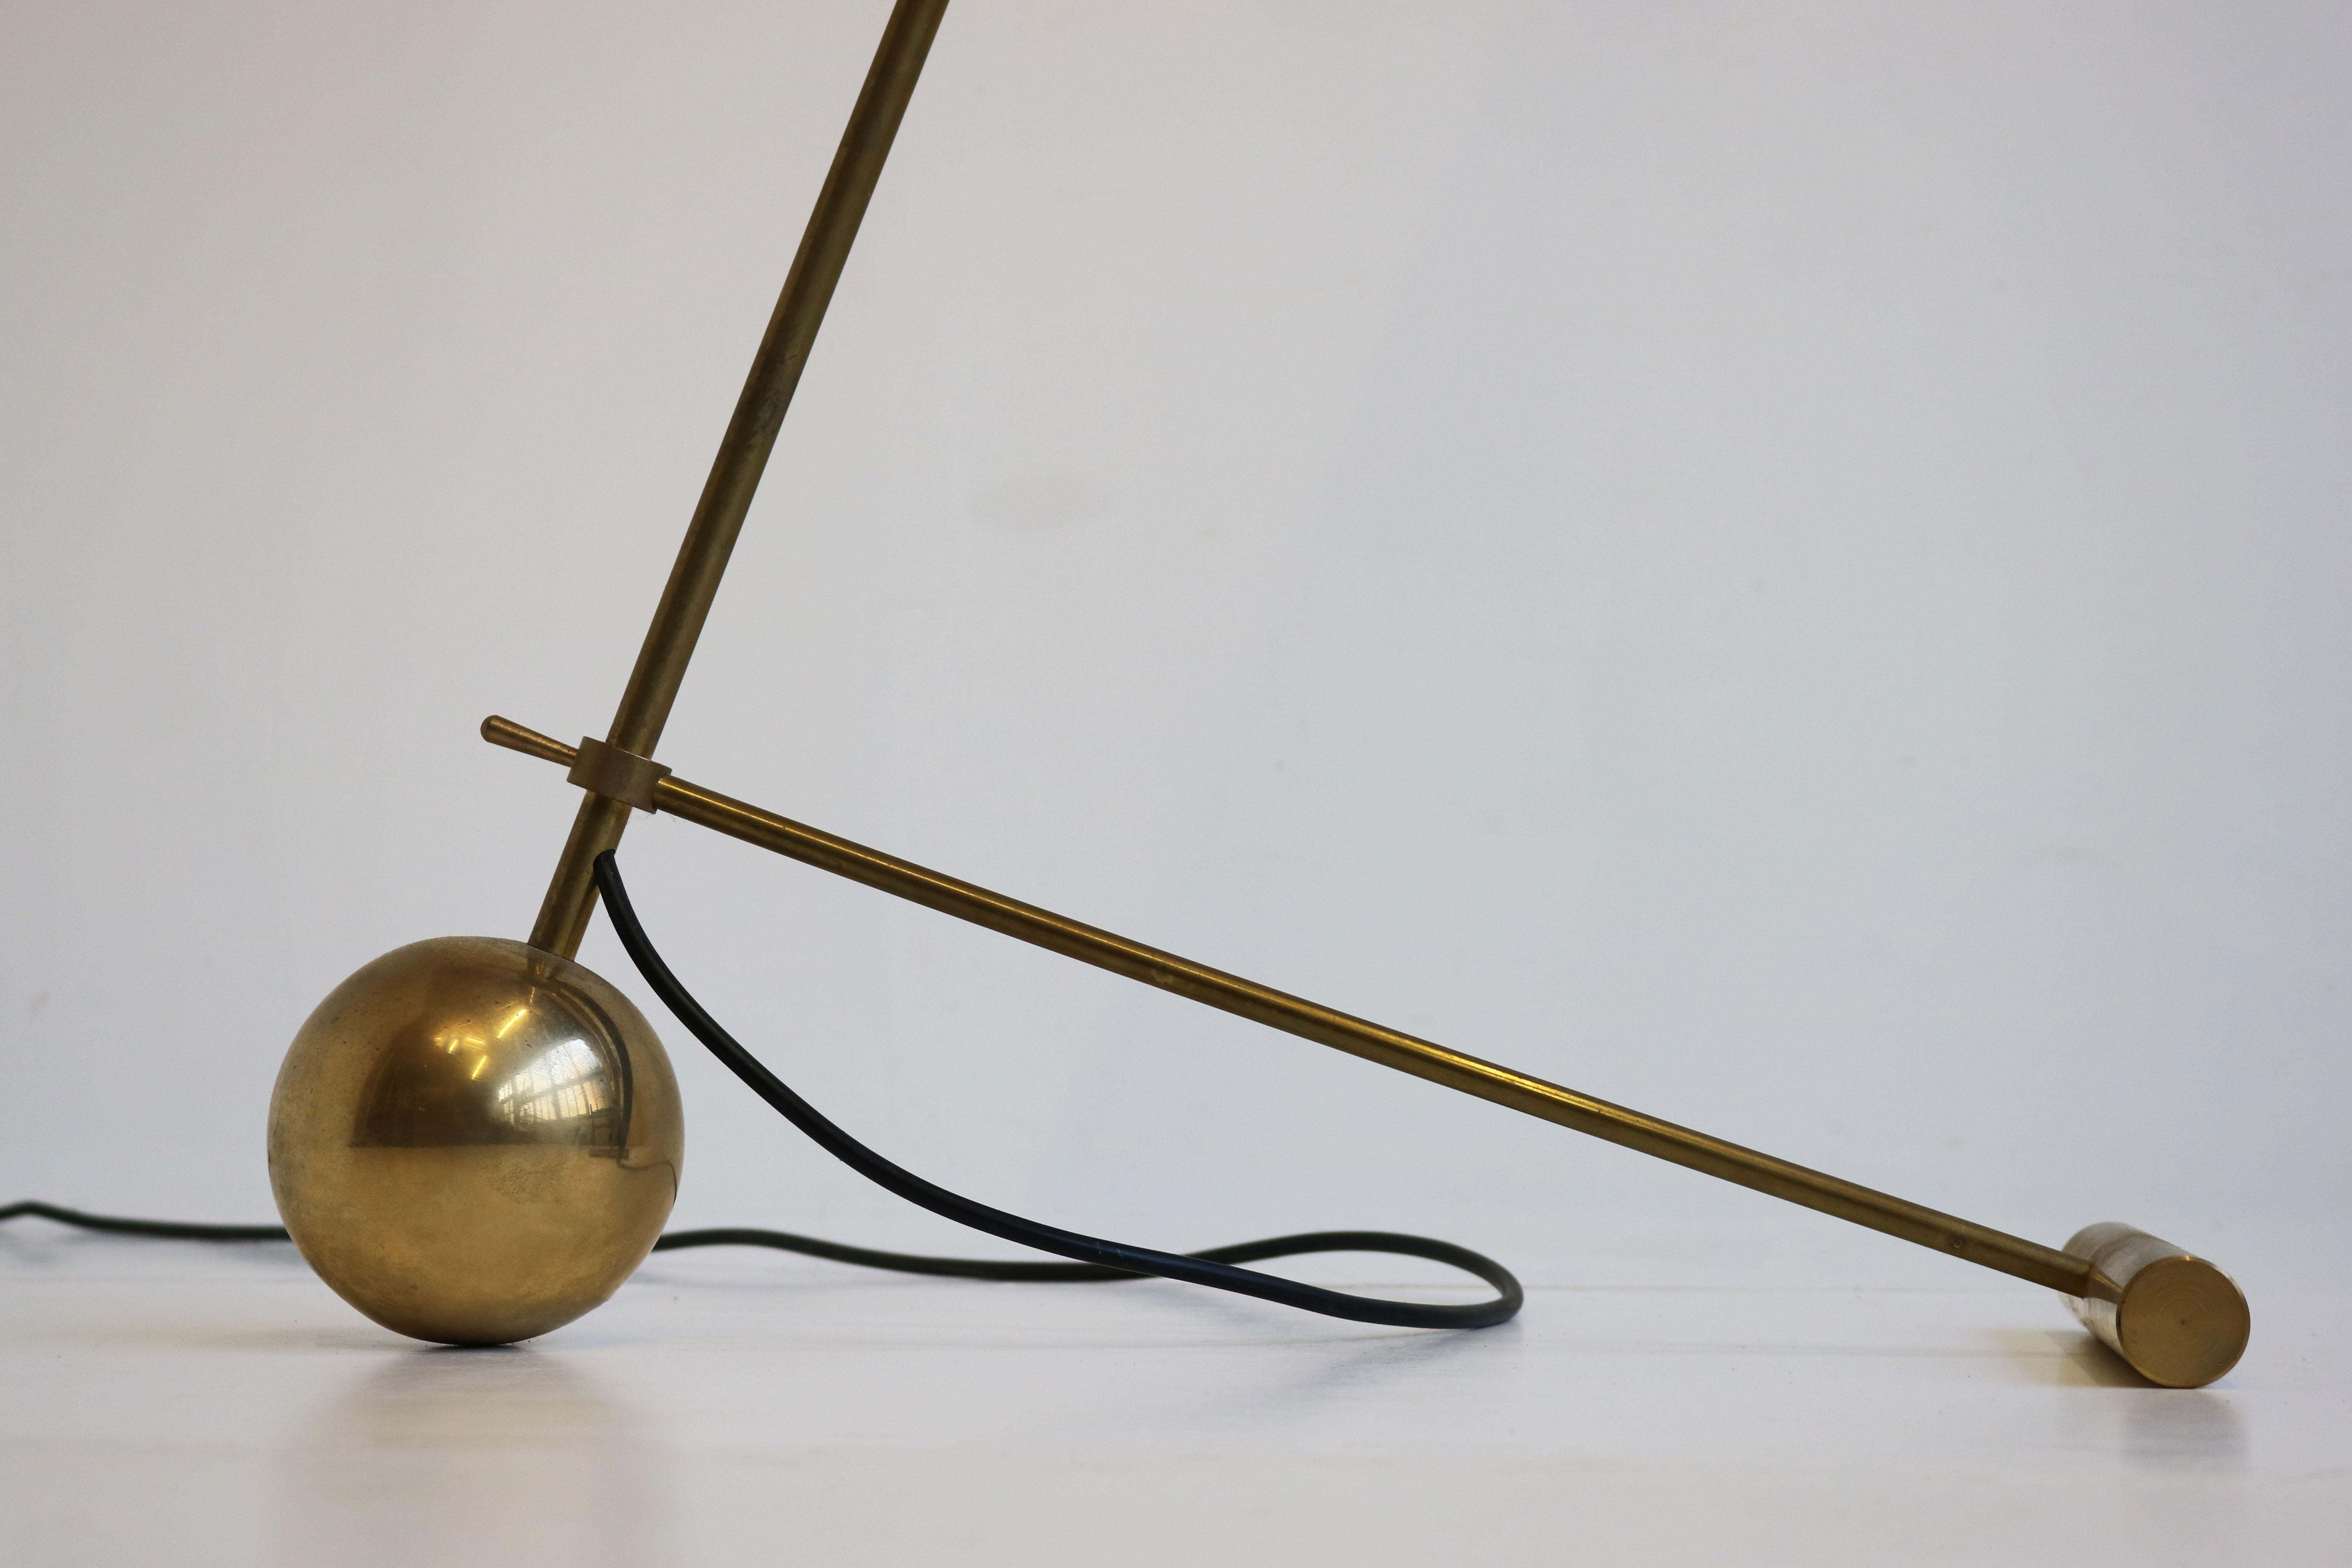 Mid-20th Century Minimalist Italian Floor Lamp Stilnovo Style 1950 Brass Mid-Century Design Light For Sale